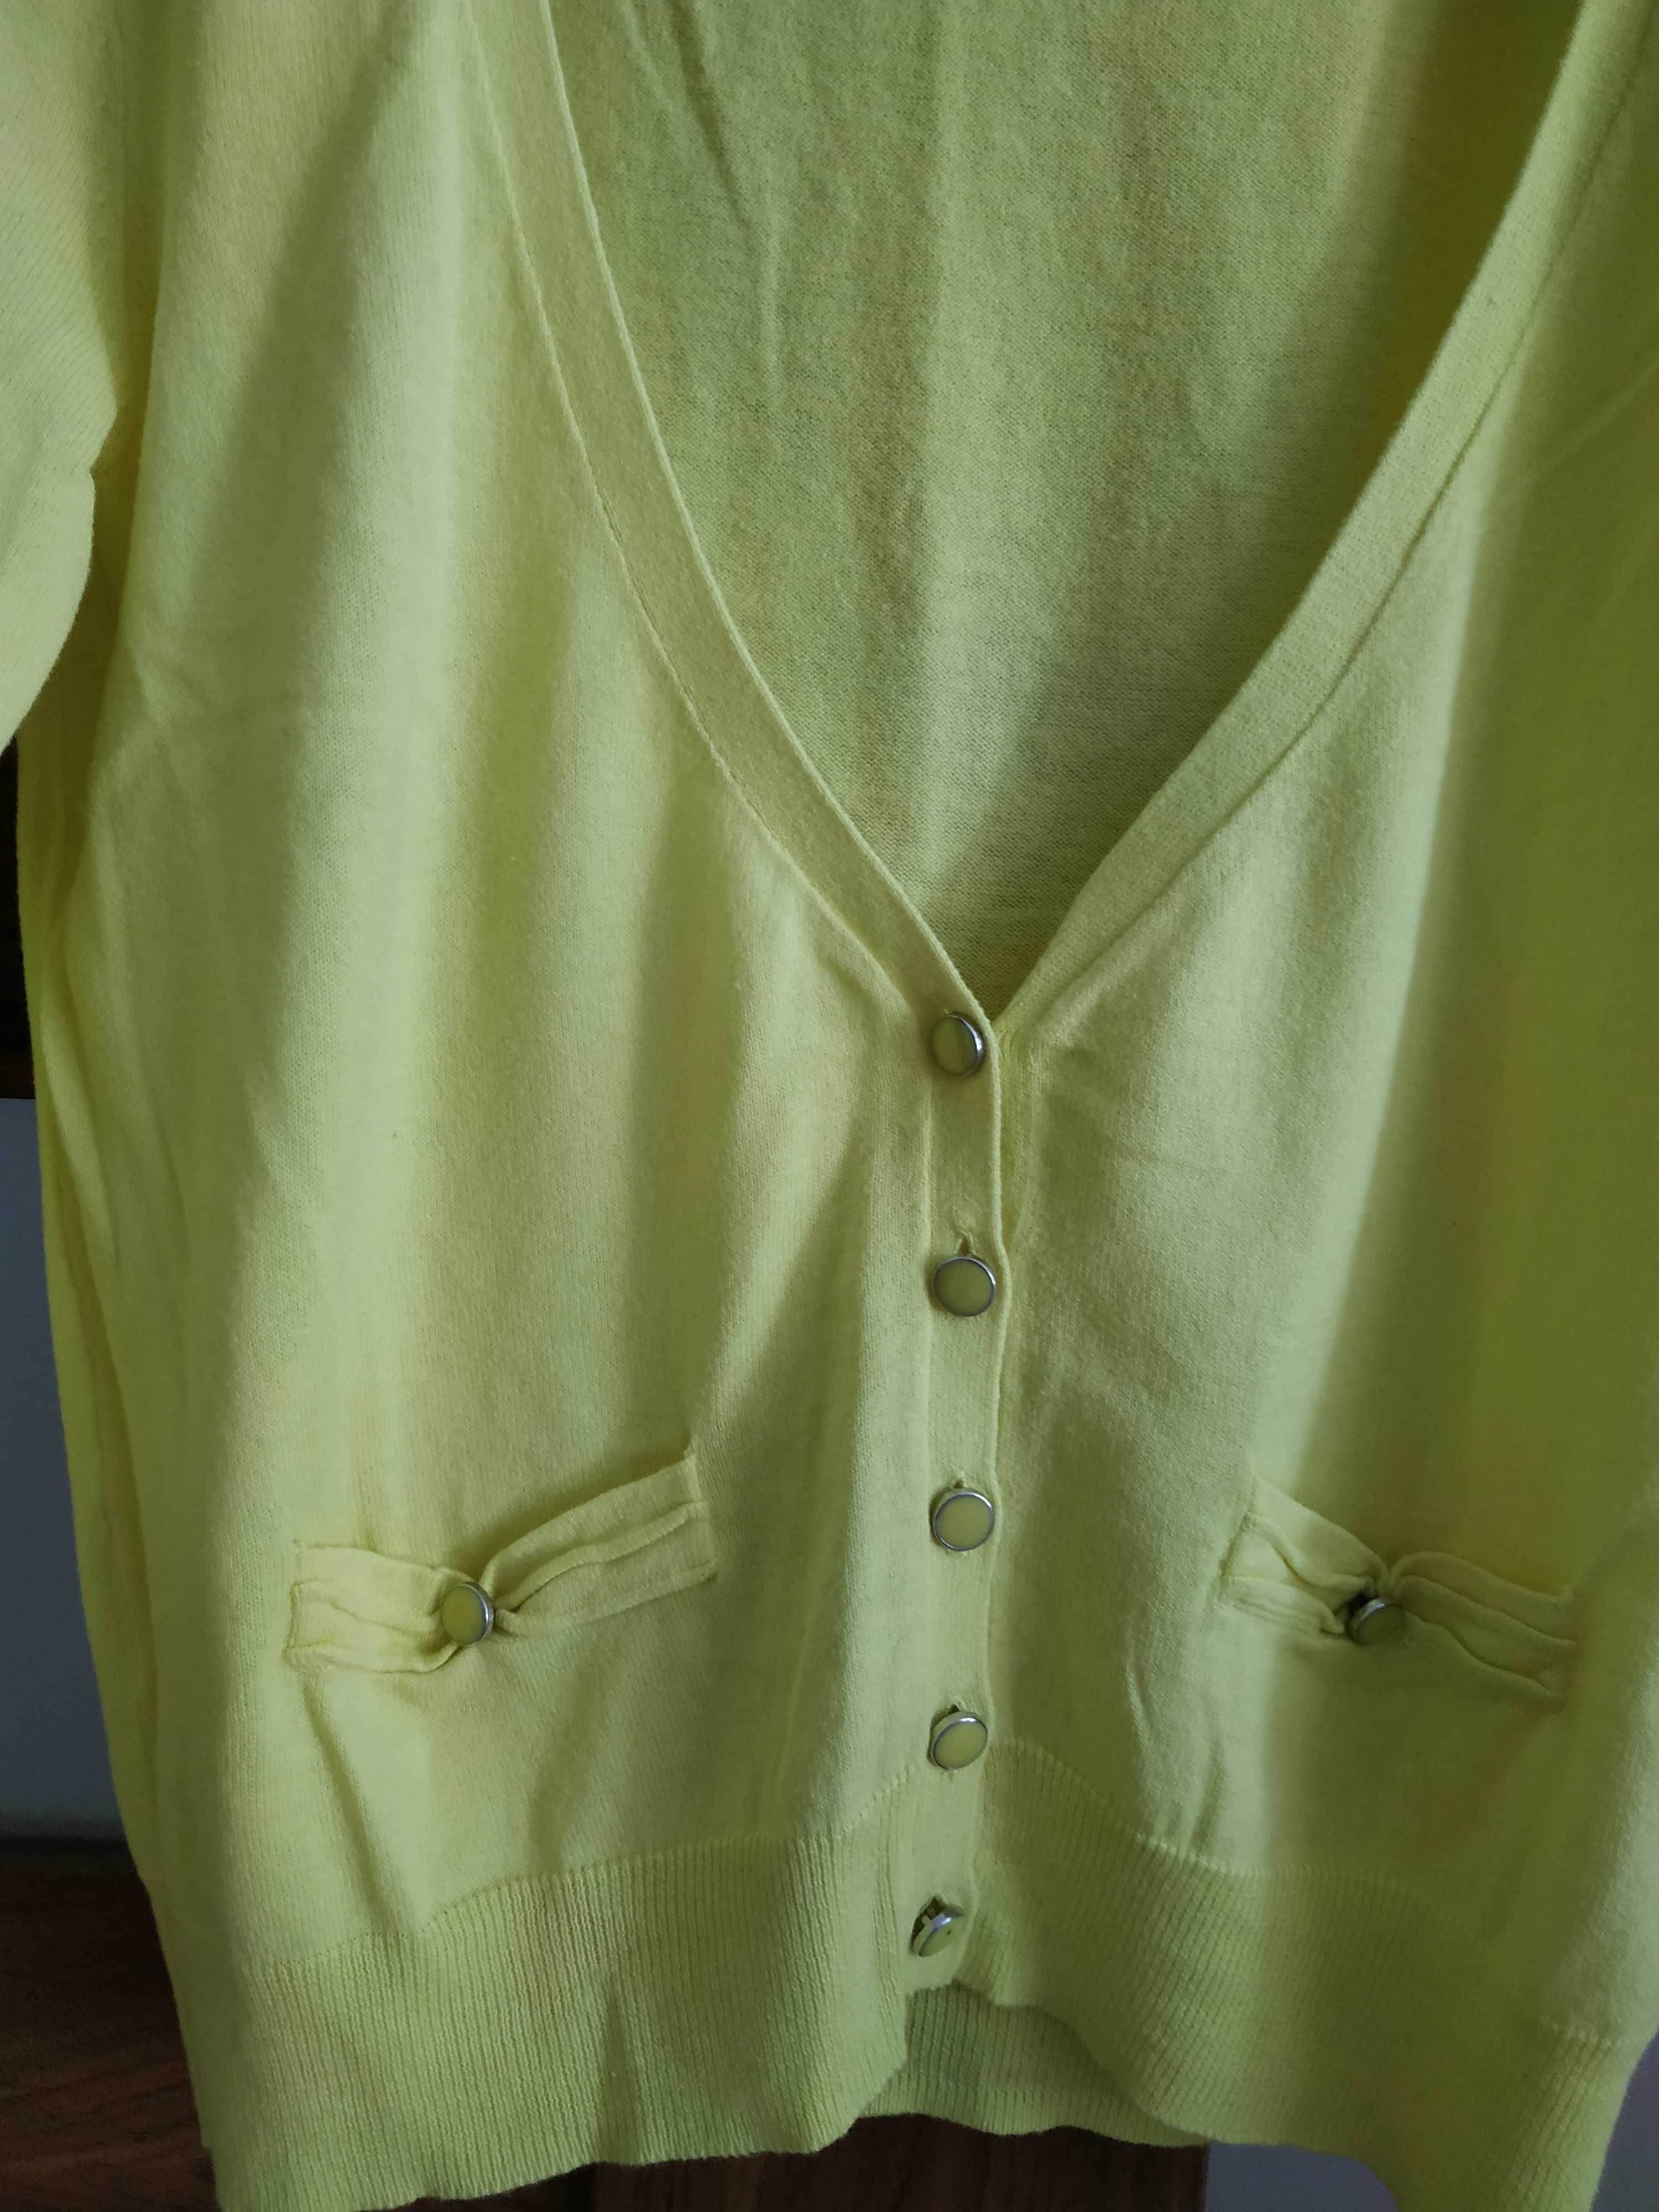 żółty sweter na guziki, z rękawem 3/4, promod, bawełna rozmiar s